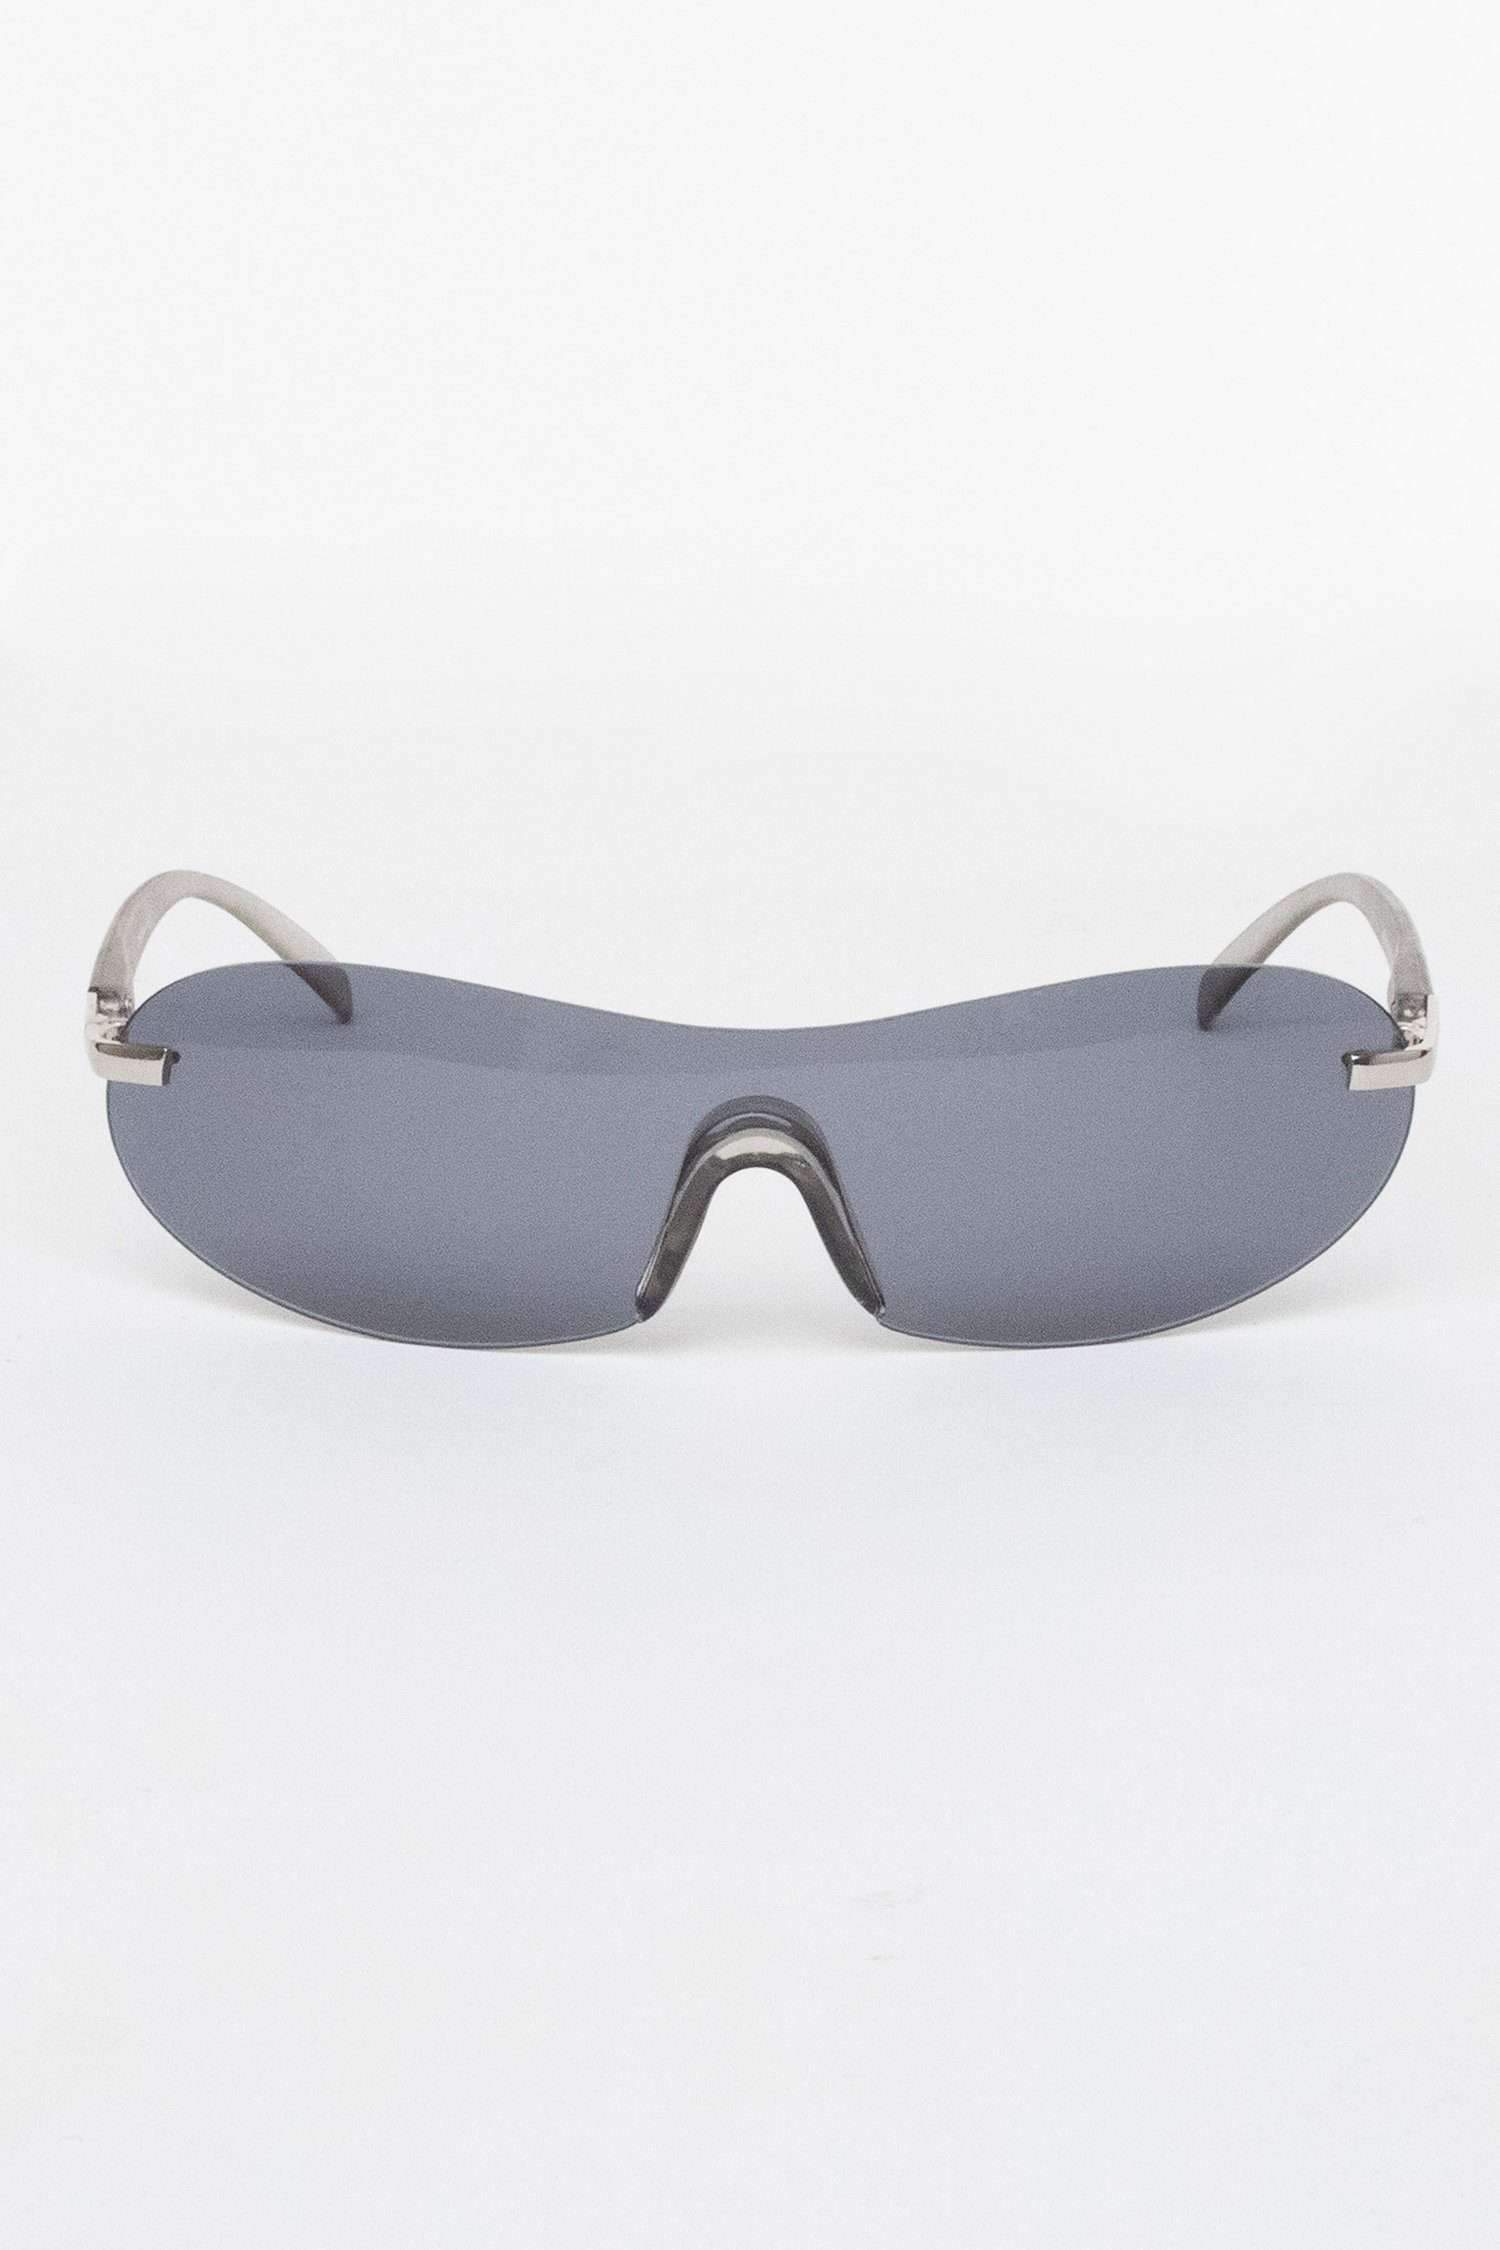 SGSHIELD - Buchanan Sport Shield Sunglasses Sunglasses Los Angeles Apparel Smoke OS 